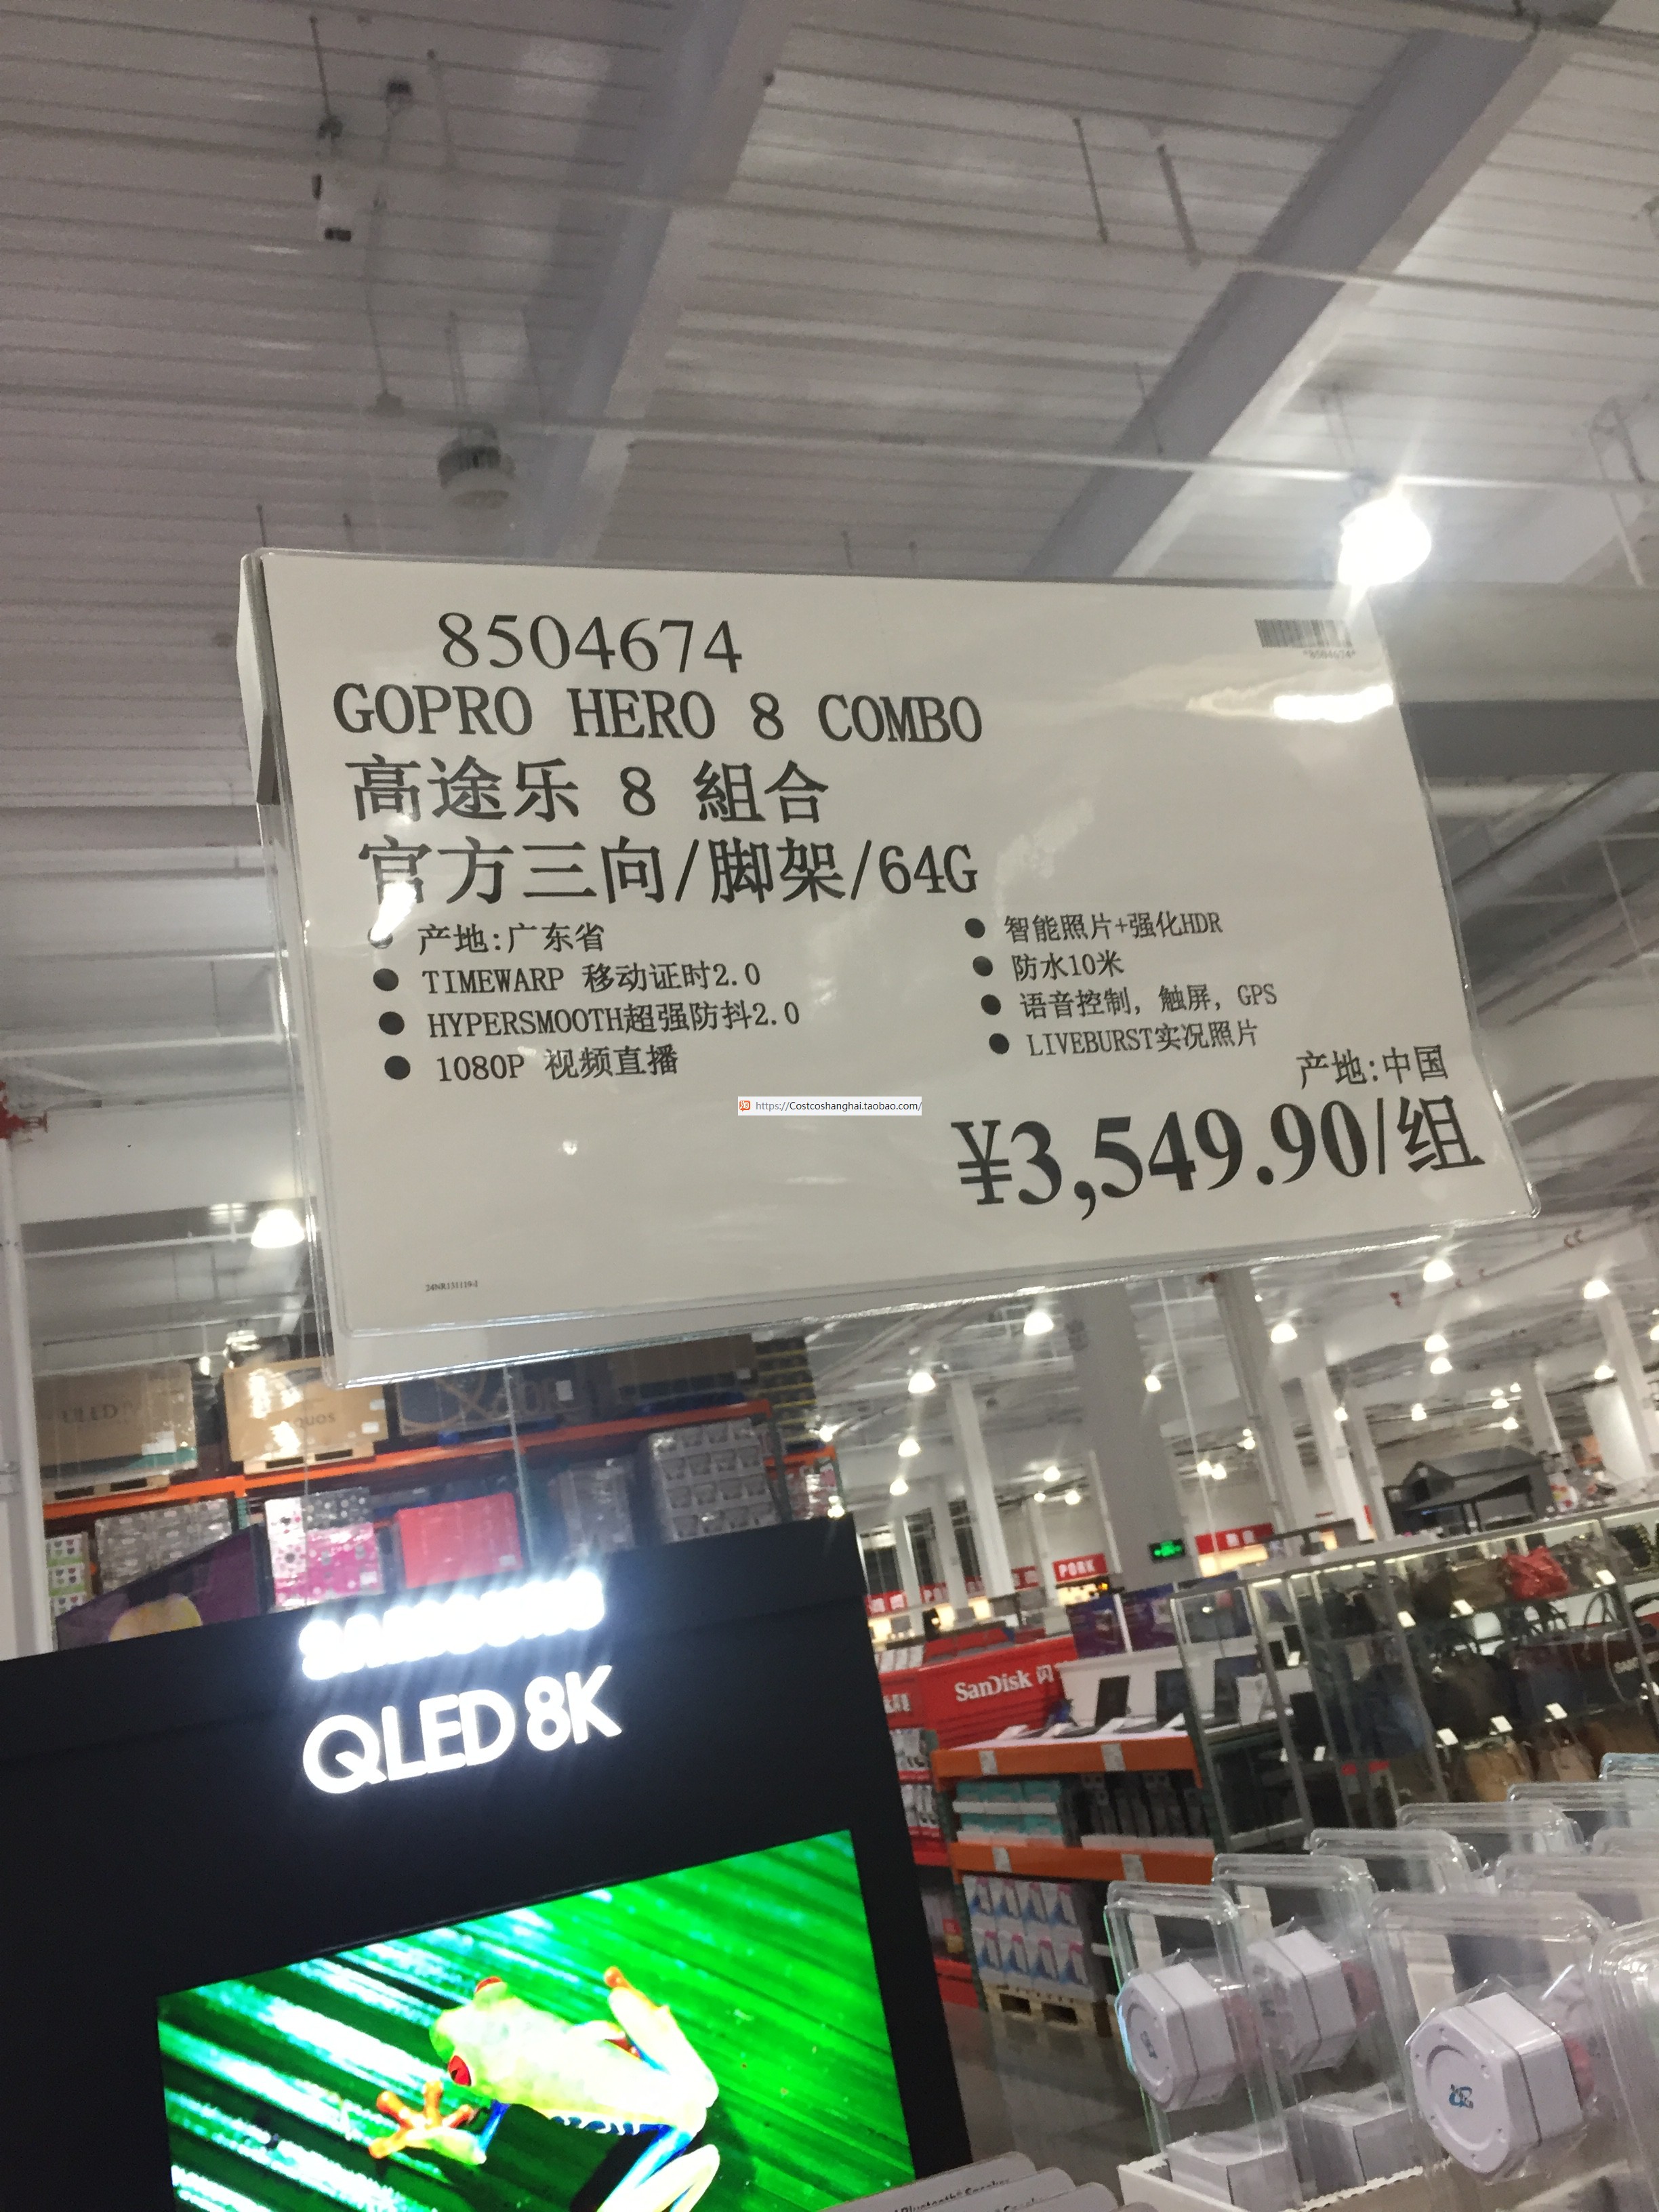 開市客costco代購gopro Hero 8 高途樂8組合三向自拍杆腳架64g卡